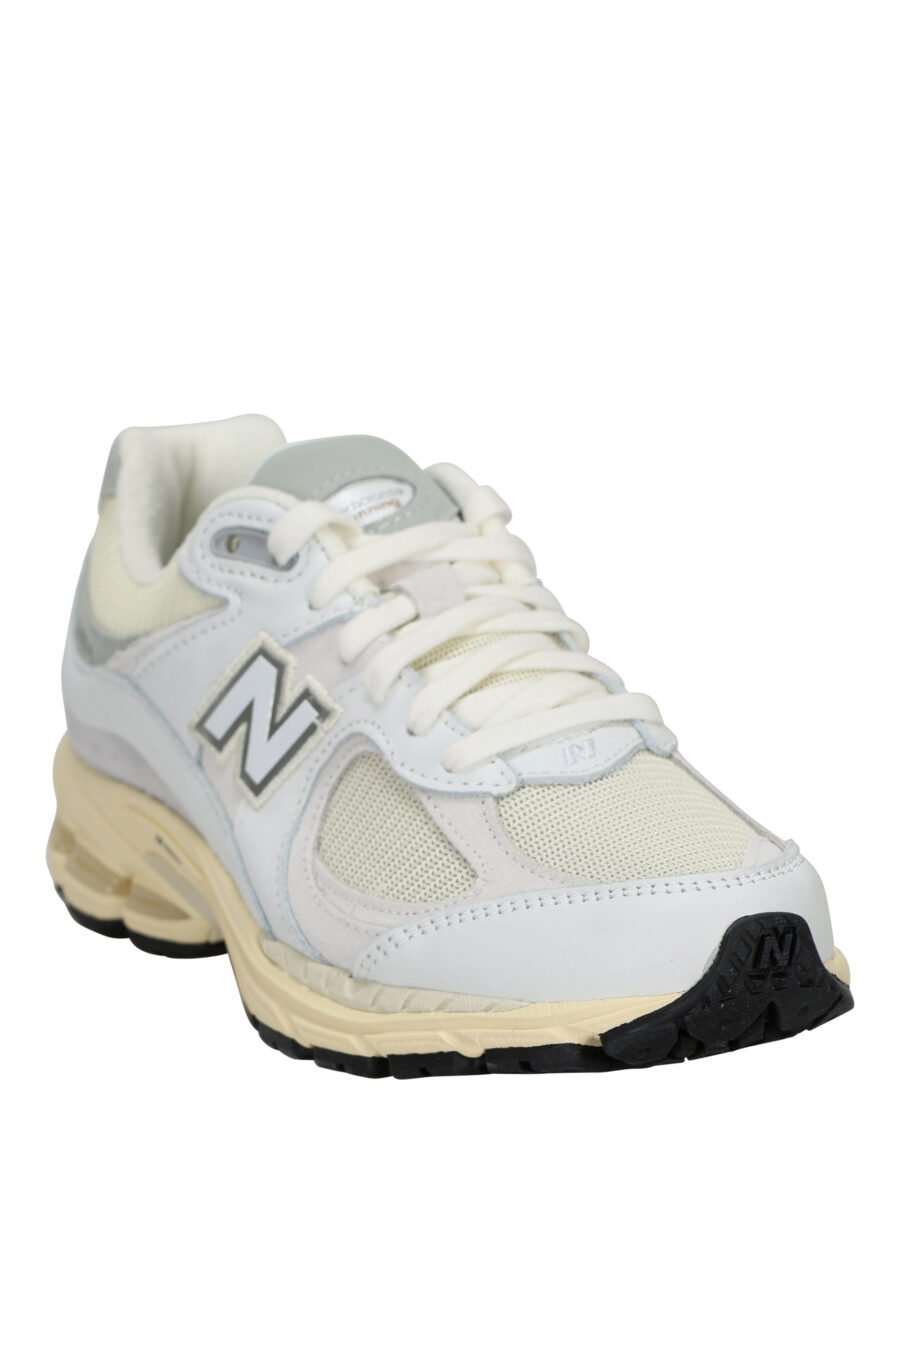 Zapatillas grises mix con blanco y suela beige "2002R" con logo "N" - 197375250014 1